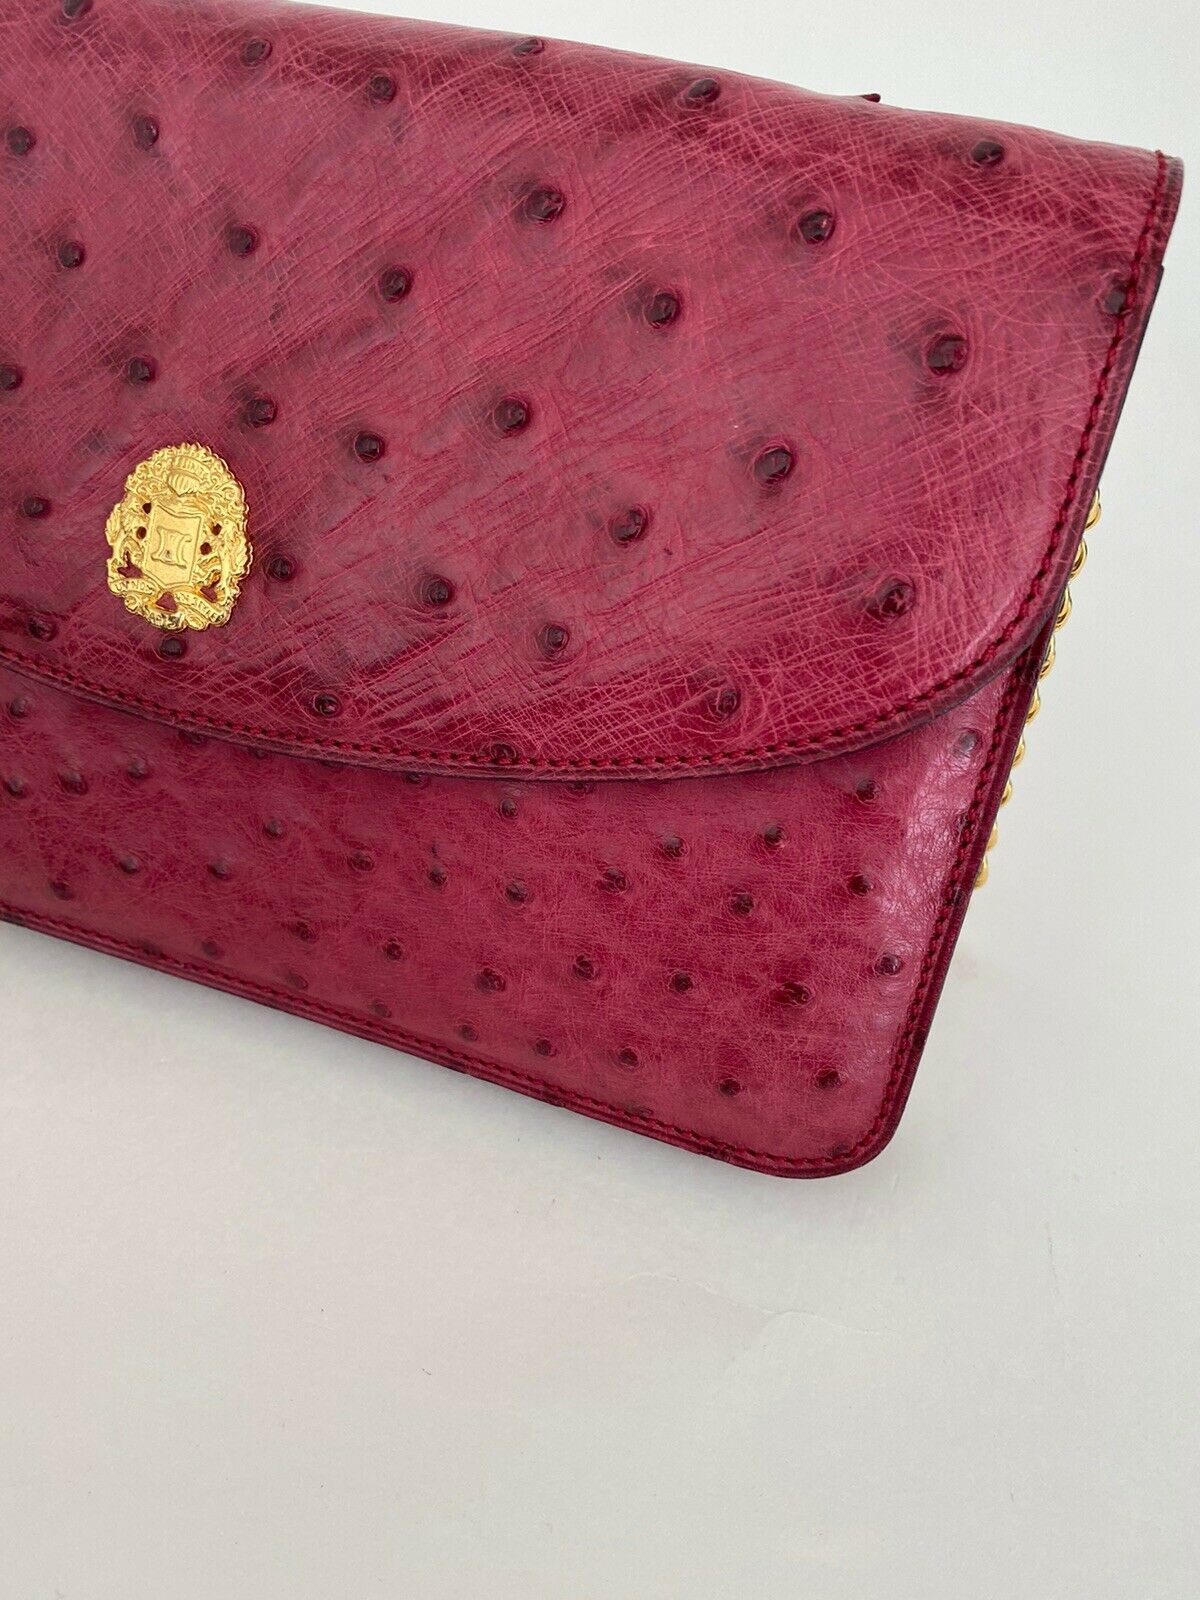 Celine Paris Ostrich Leather shoulder Bag Clutch Bag Crossbody Bag Pink